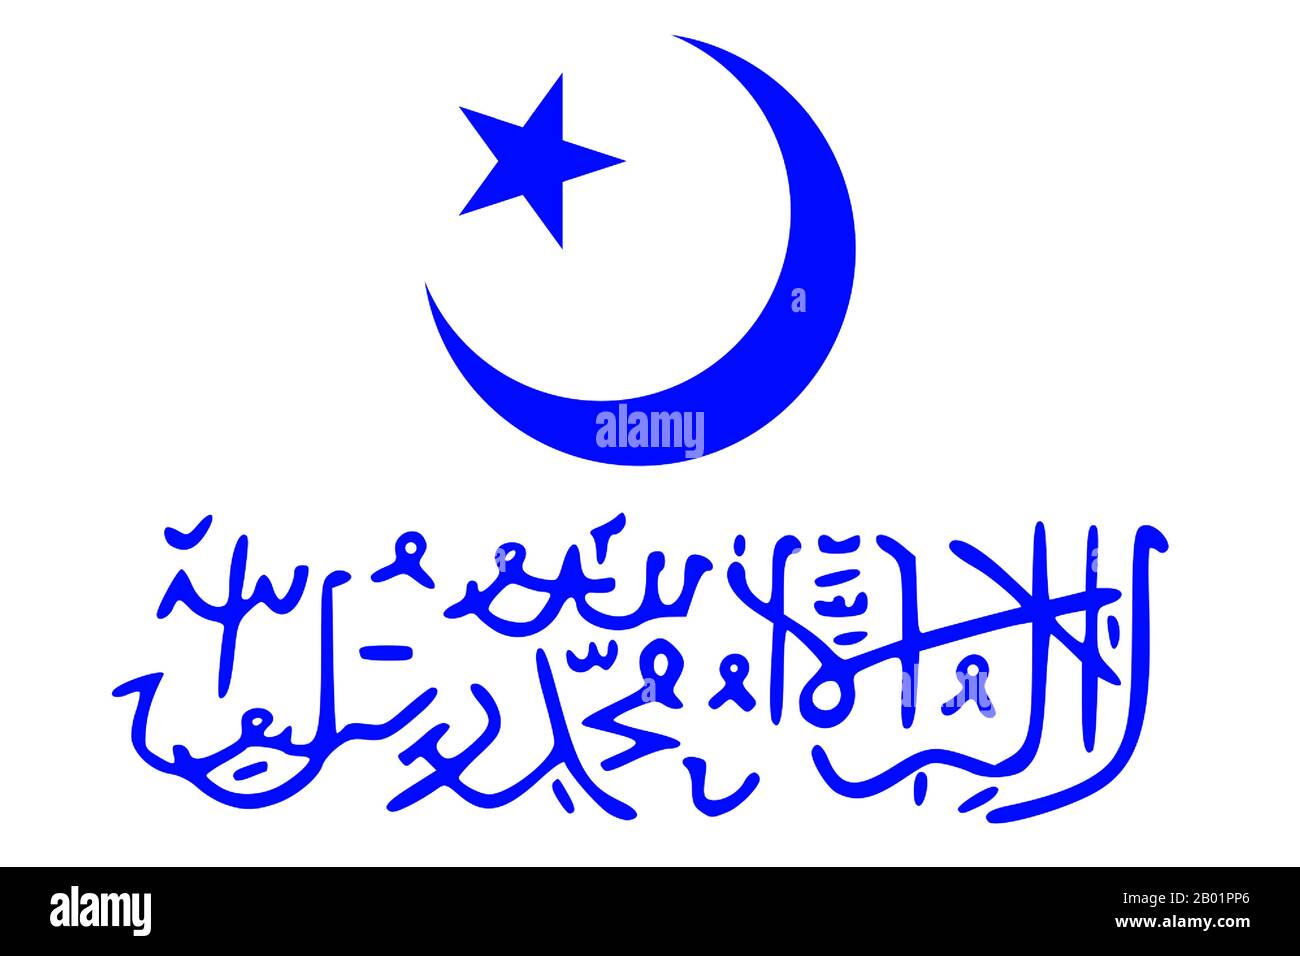 Cina: Bandiera della Repubblica turco-islamica del Turkestan orientale (prima Repubblica del Turkestan orientale), Xinjiang, 1933-1934. La prima Repubblica del Turkestan orientale (ETR), o Repubblica islamica turca del Turkestan orientale (TIRET), anche Repubblica dell'Uyghurstan, (Sherqiy Türkistan Yislam Jumuhuriyiti o Sarki Turk Islam Cumhuriyeti) fu una repubblica islamica di breve durata fondata nel 1933. Era incentrata sulla città di Khotan in quella che oggi è la regione autonoma uigura dello Xinjiang amministrata dalla Repubblica popolare cinese. Foto Stock